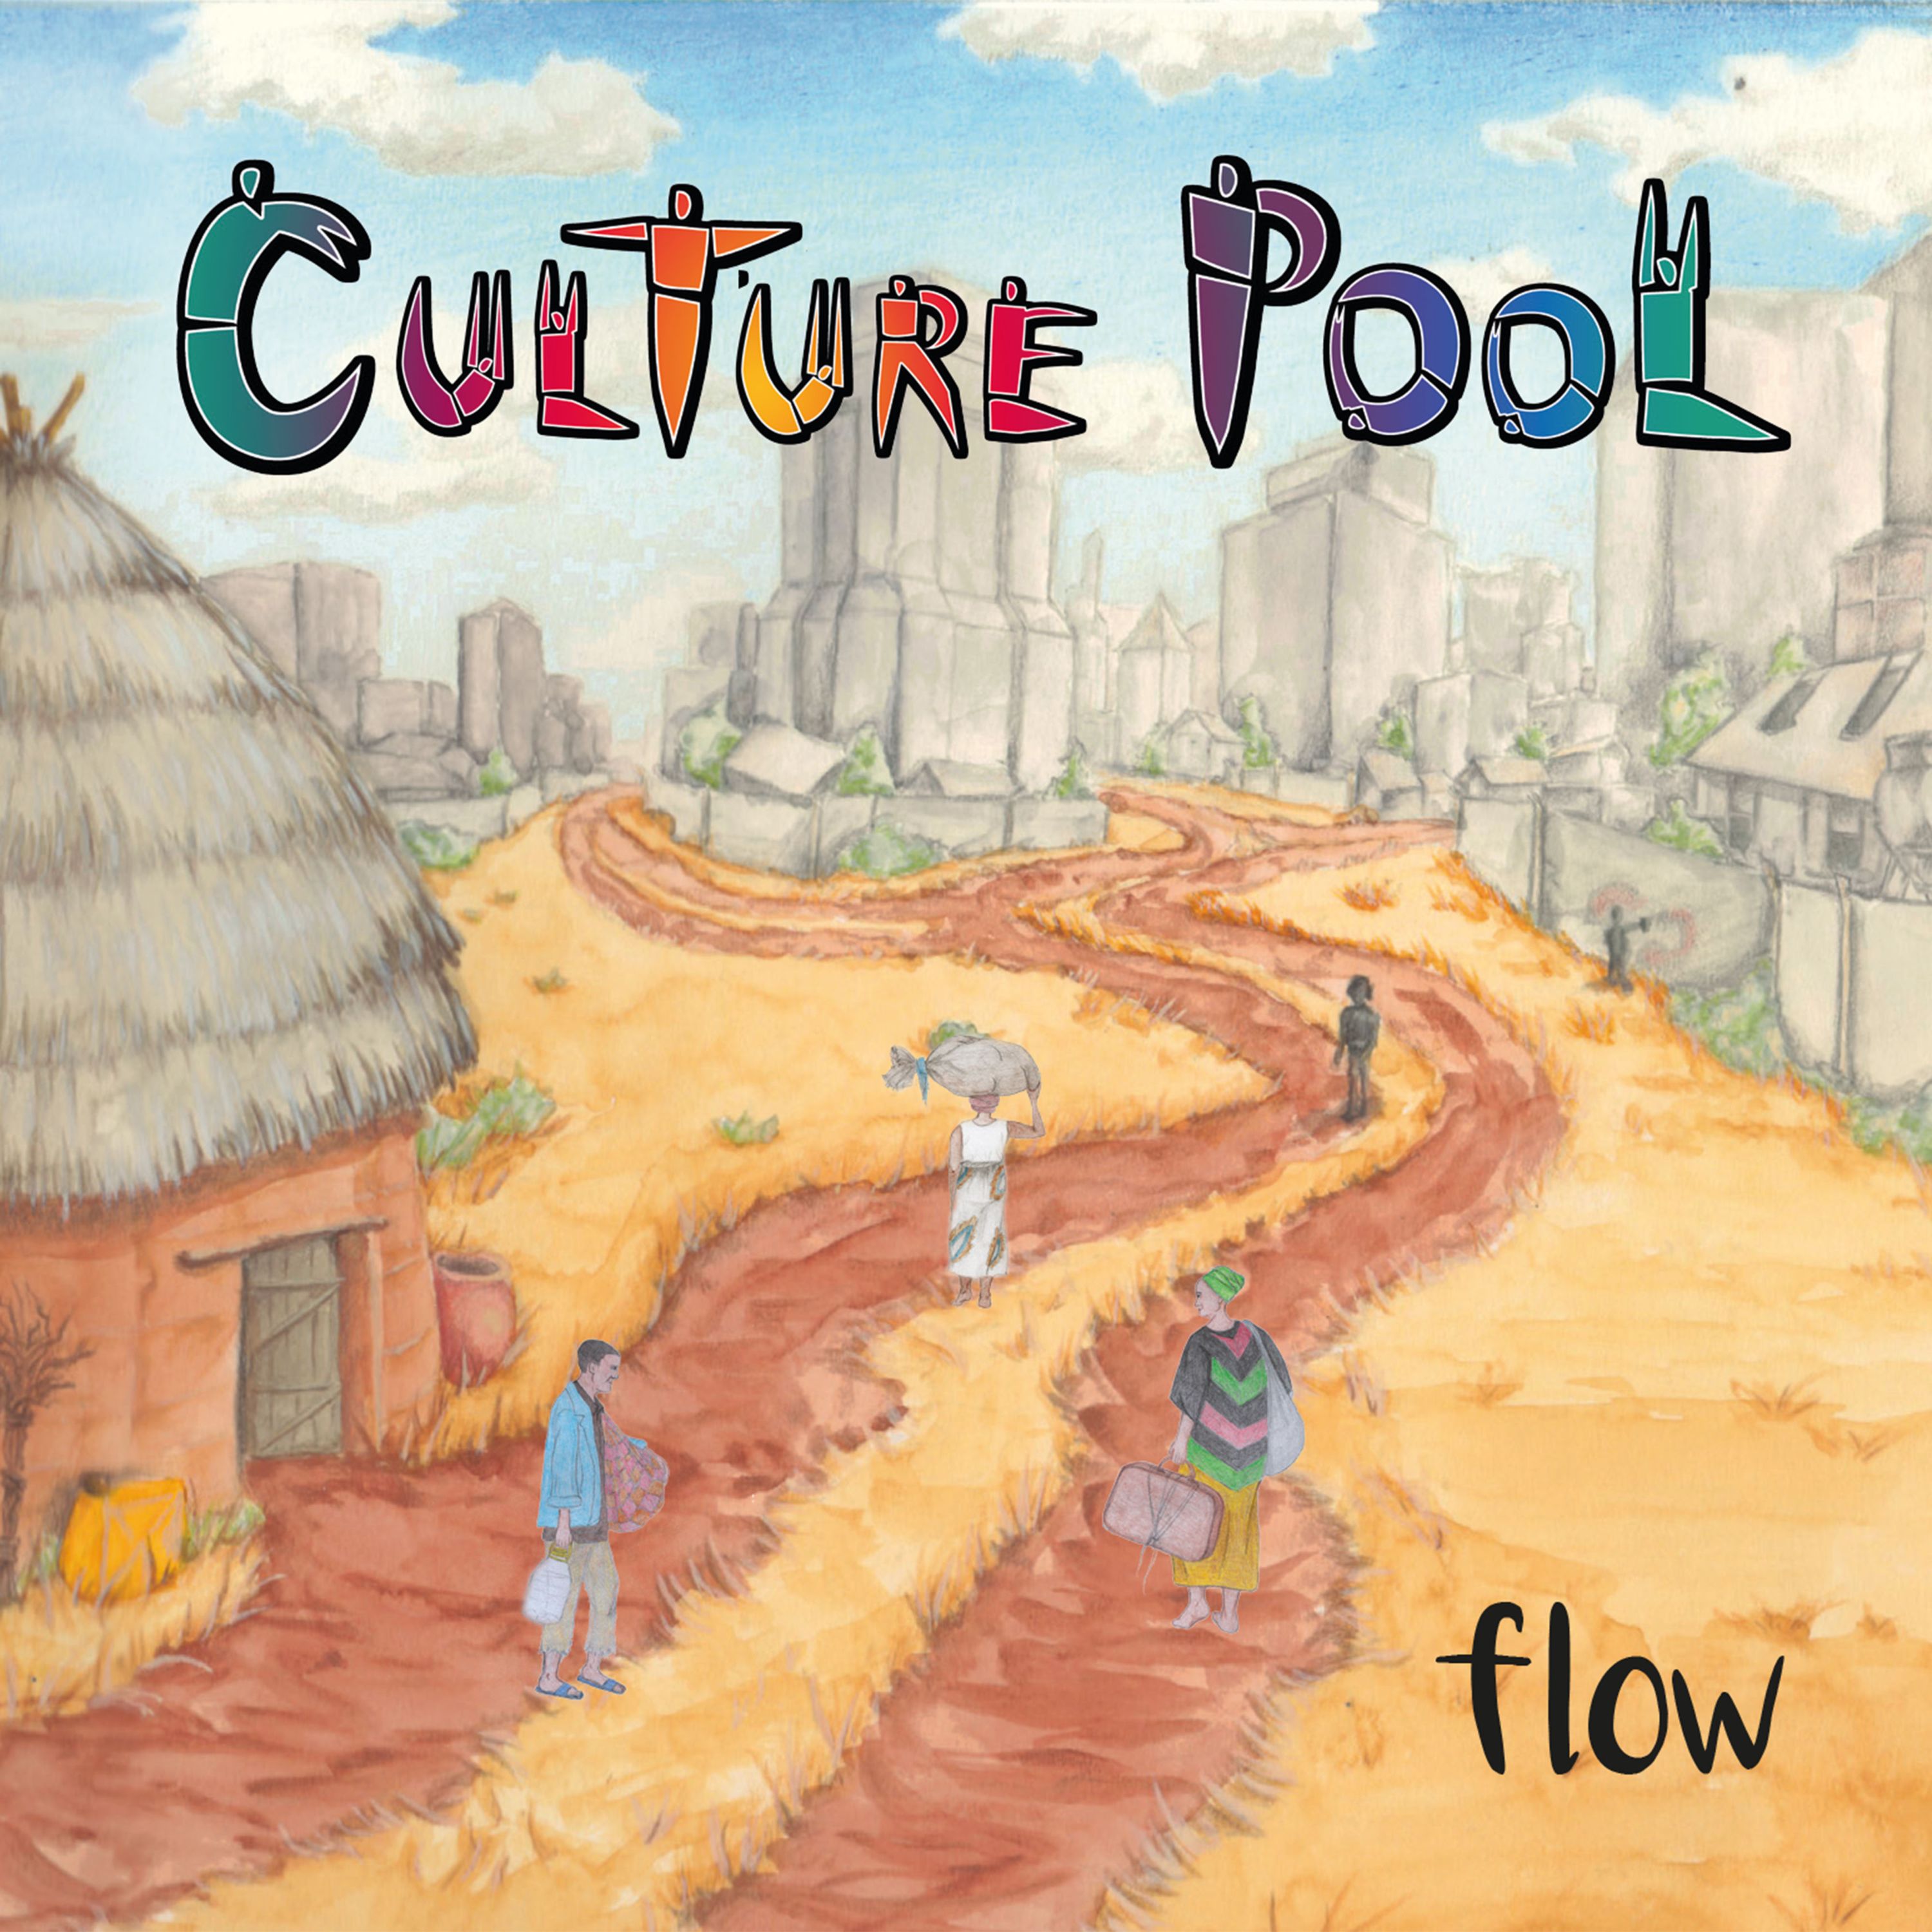 culture pool flow 3000x3000px